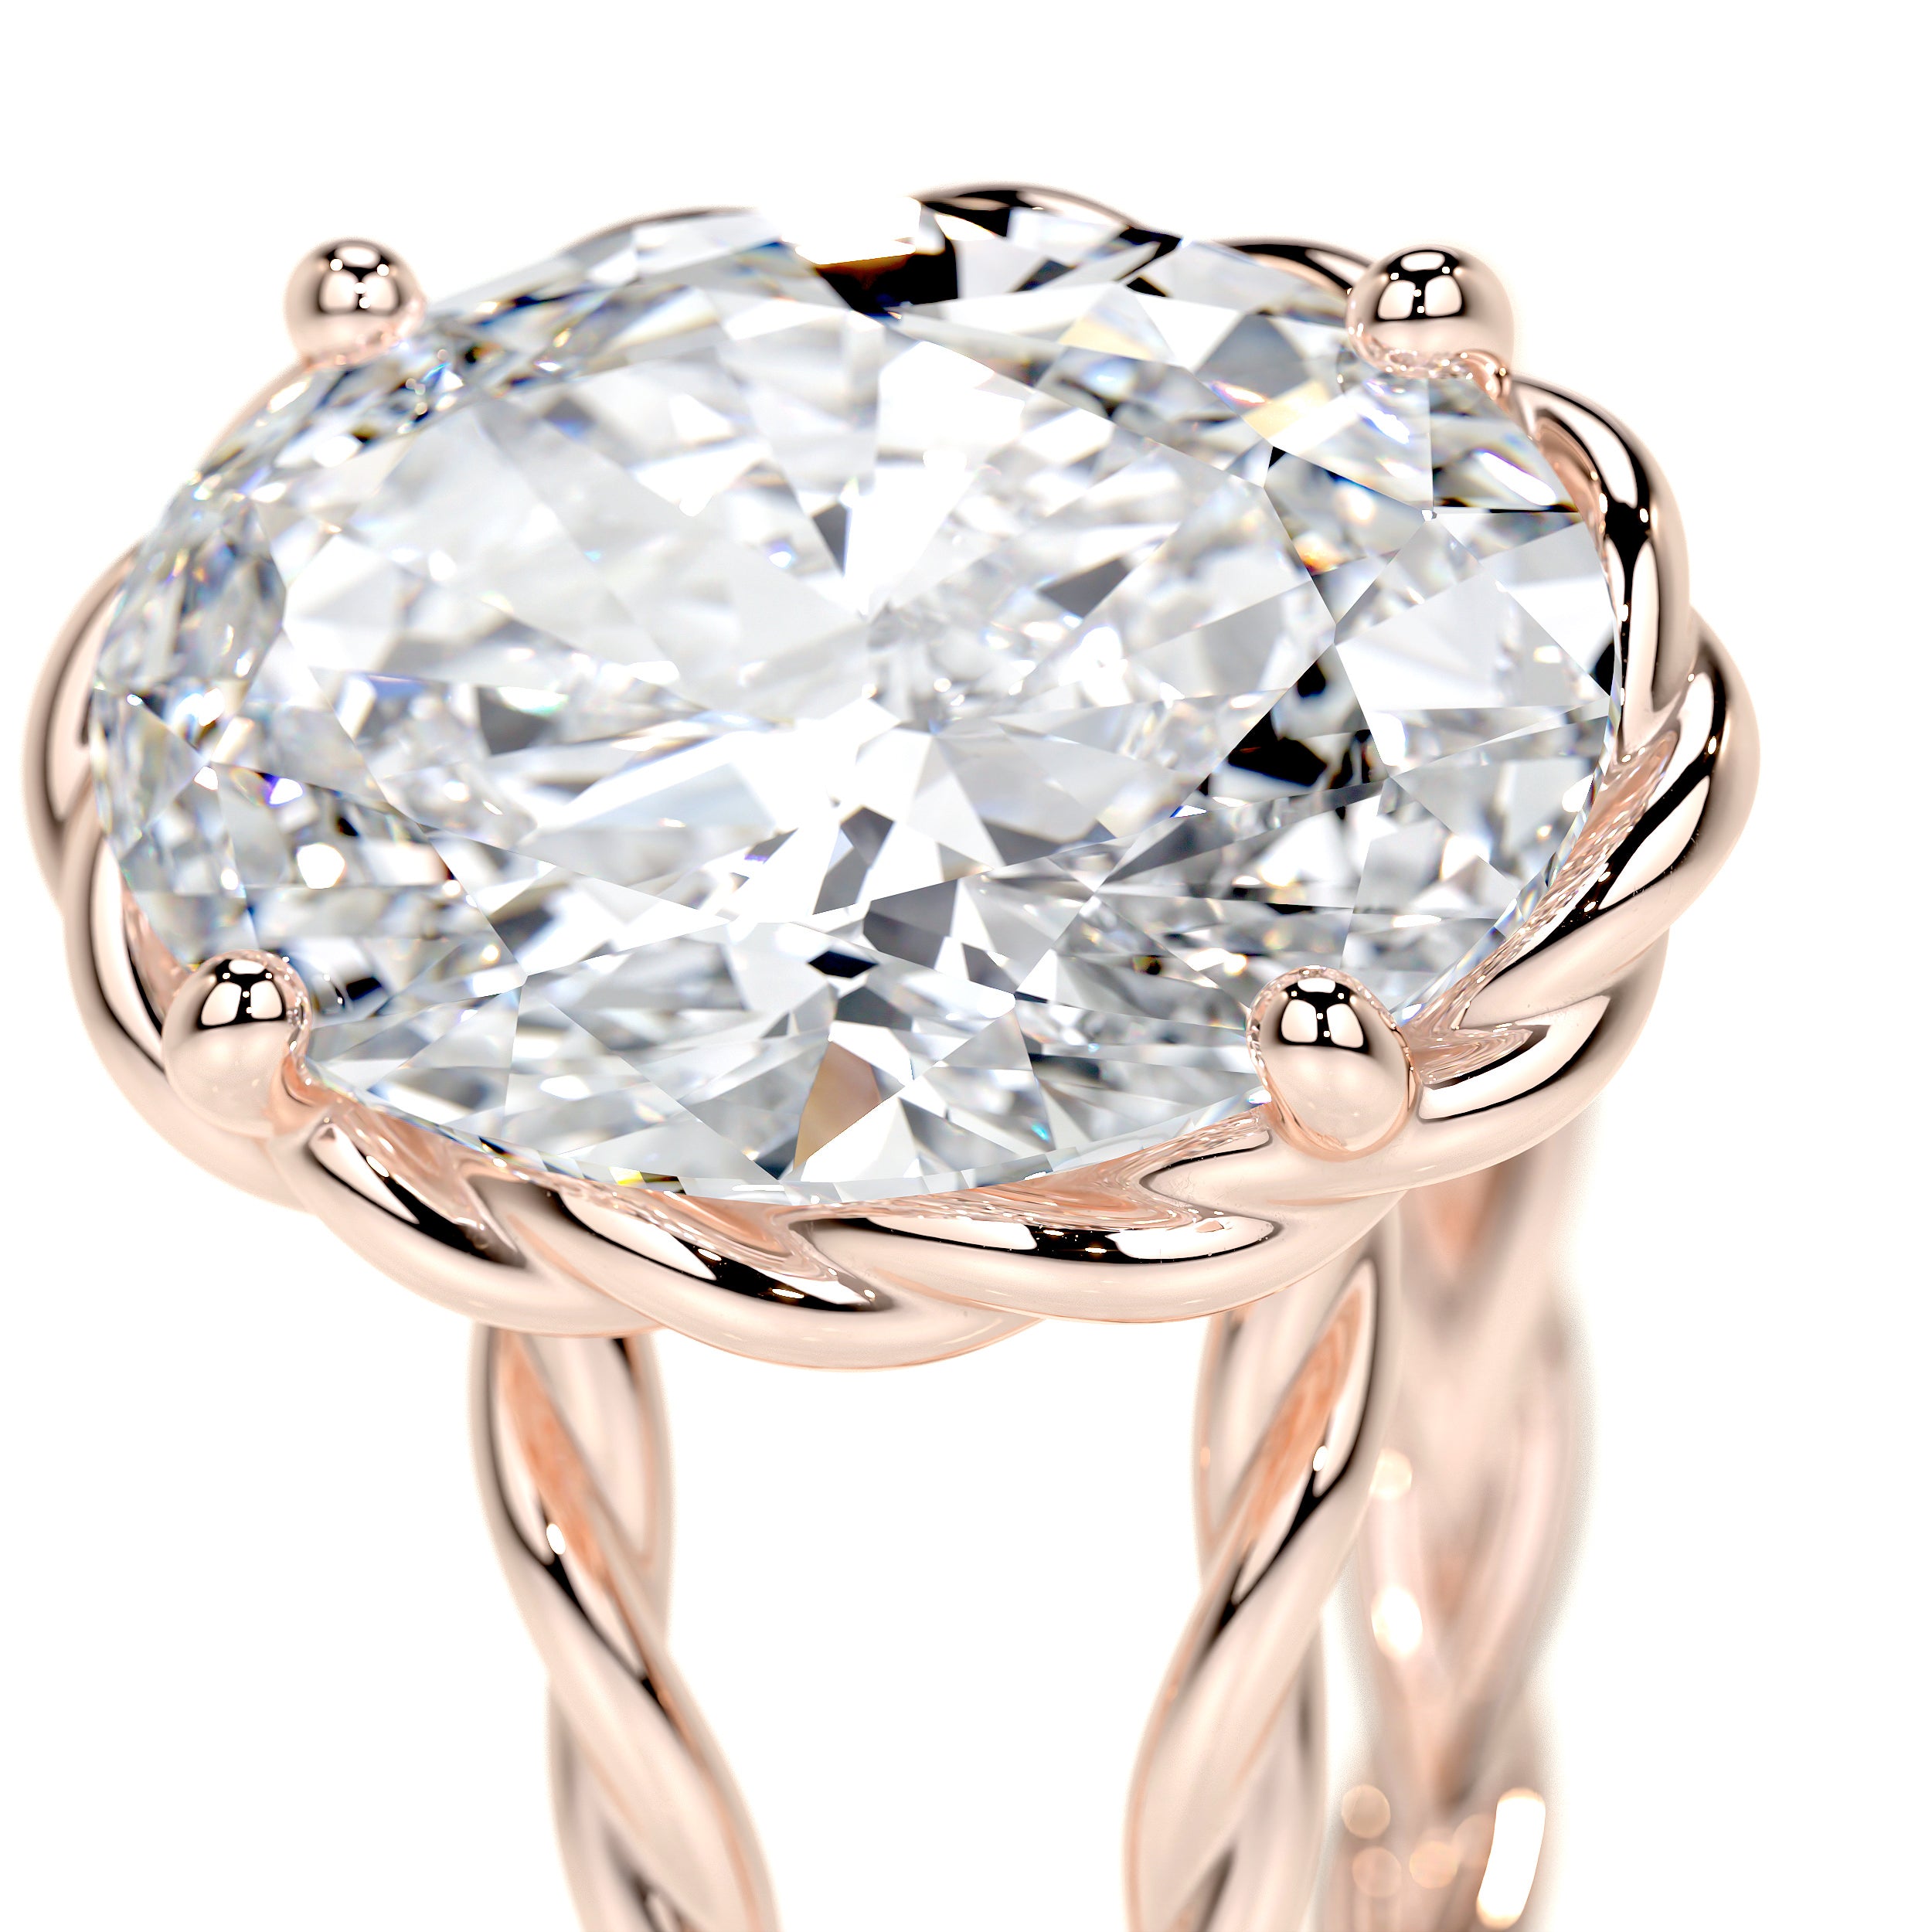 Milani Lab Grown Diamond Ring -14K Rose Gold